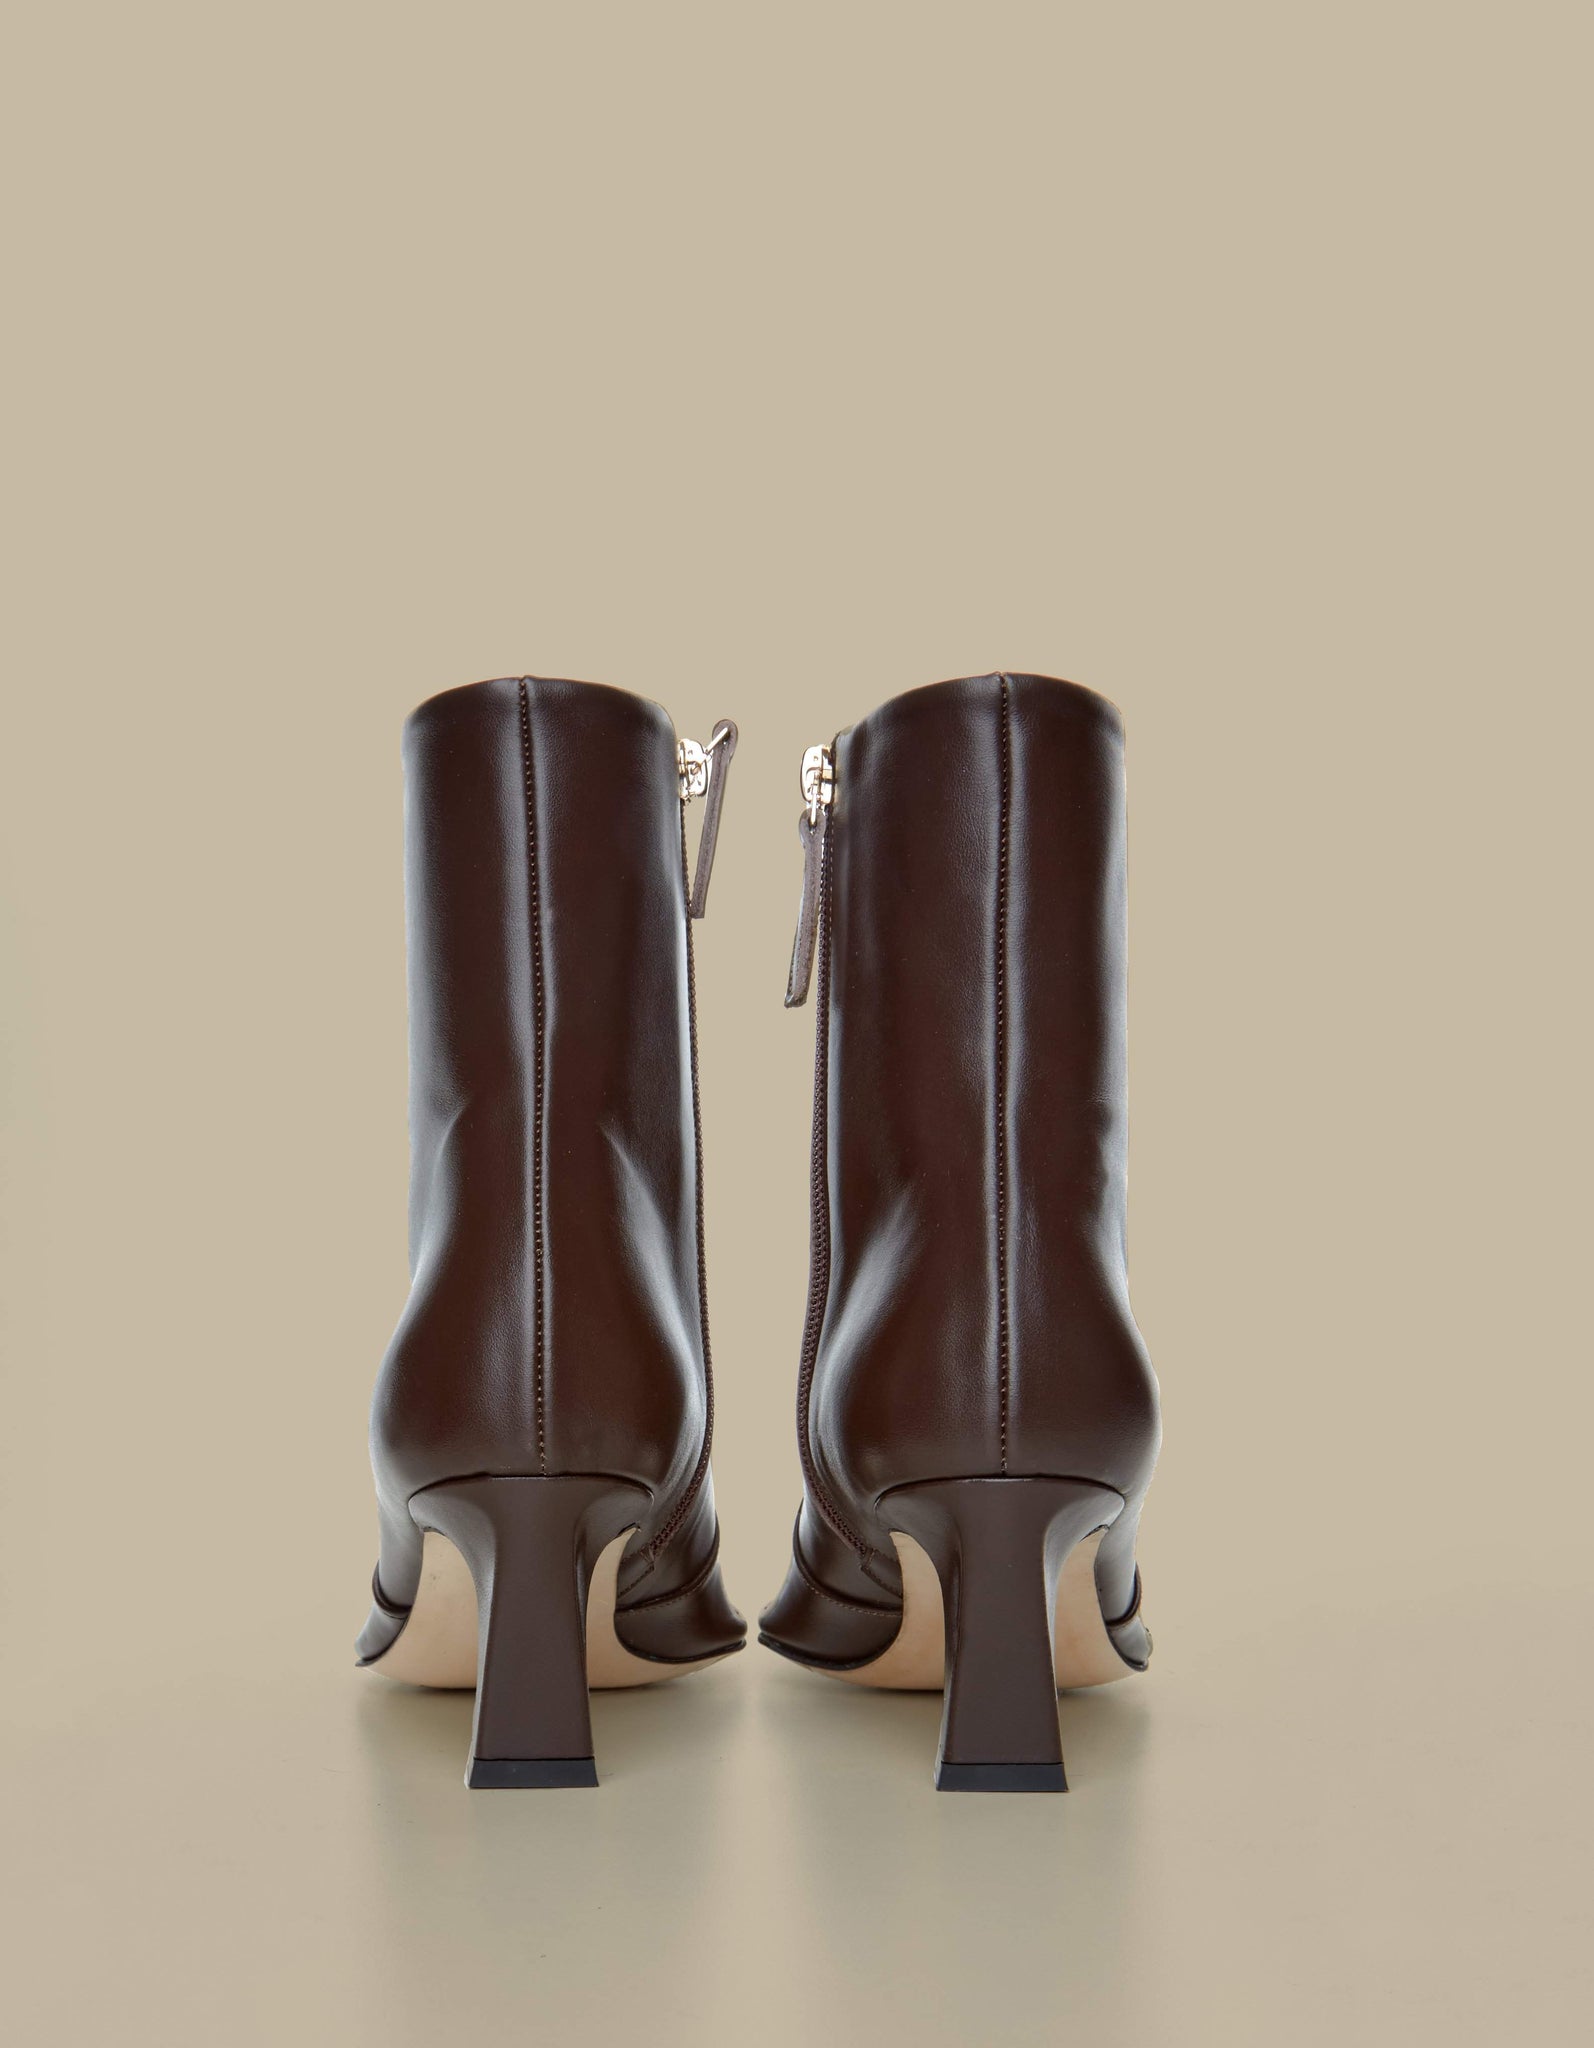 Calais Ankle Boots-Chocolate - Je la connais